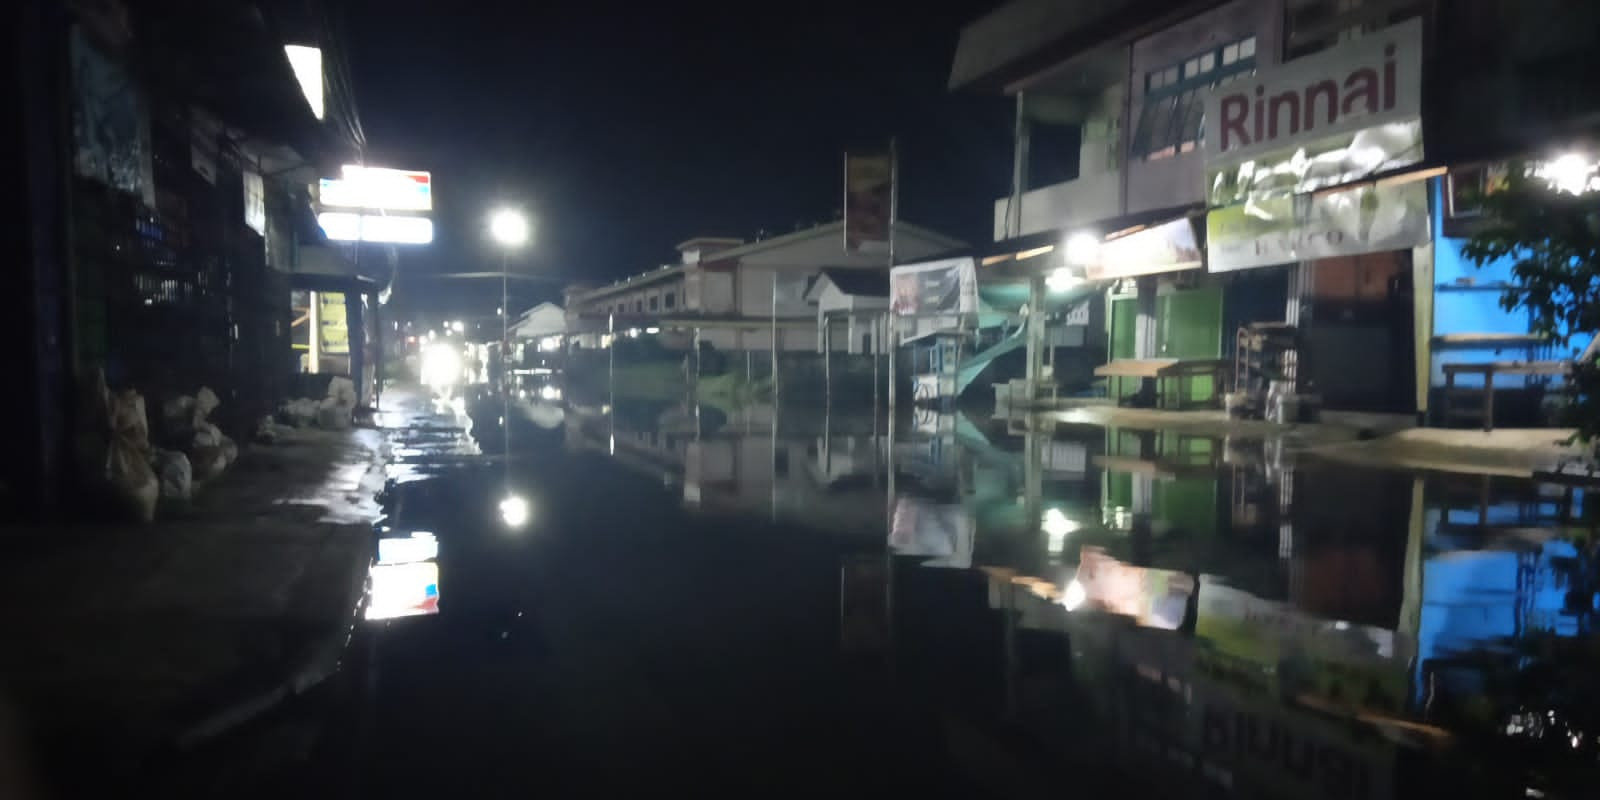 Tiga Minggu Dilanda Banjir, Sejumlah Wilayah di Sanggau Masih Terendam Air, Ratusan Warga Mengungsi?